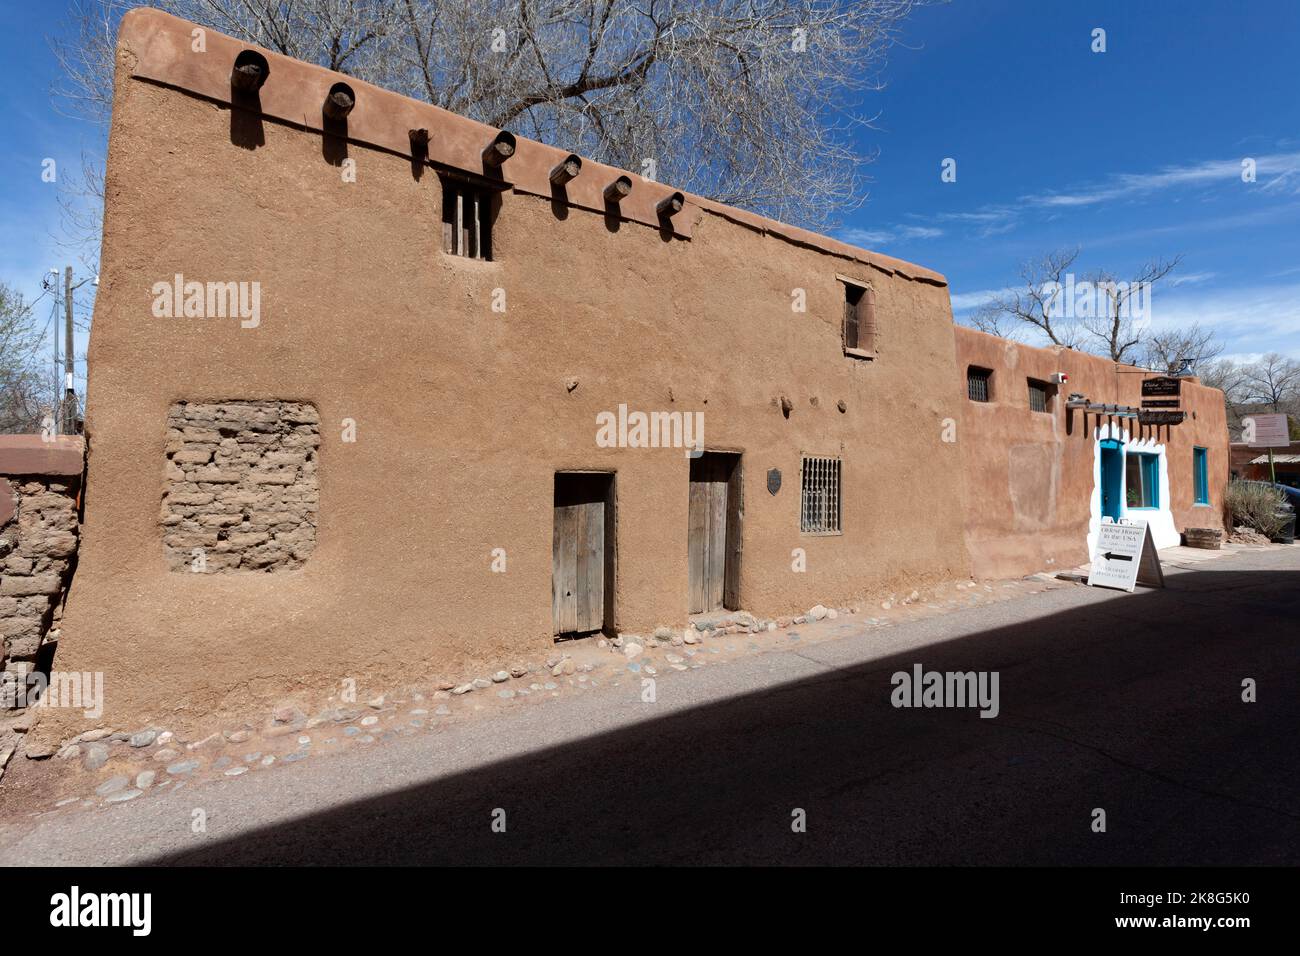 La maison de rue adobe de Vargas, souvent appelée la plus ancienne maison, est un bâtiment historique à Santa Fe, Nouveau-Mexique. La maison est souvent dit à b. Banque D'Images